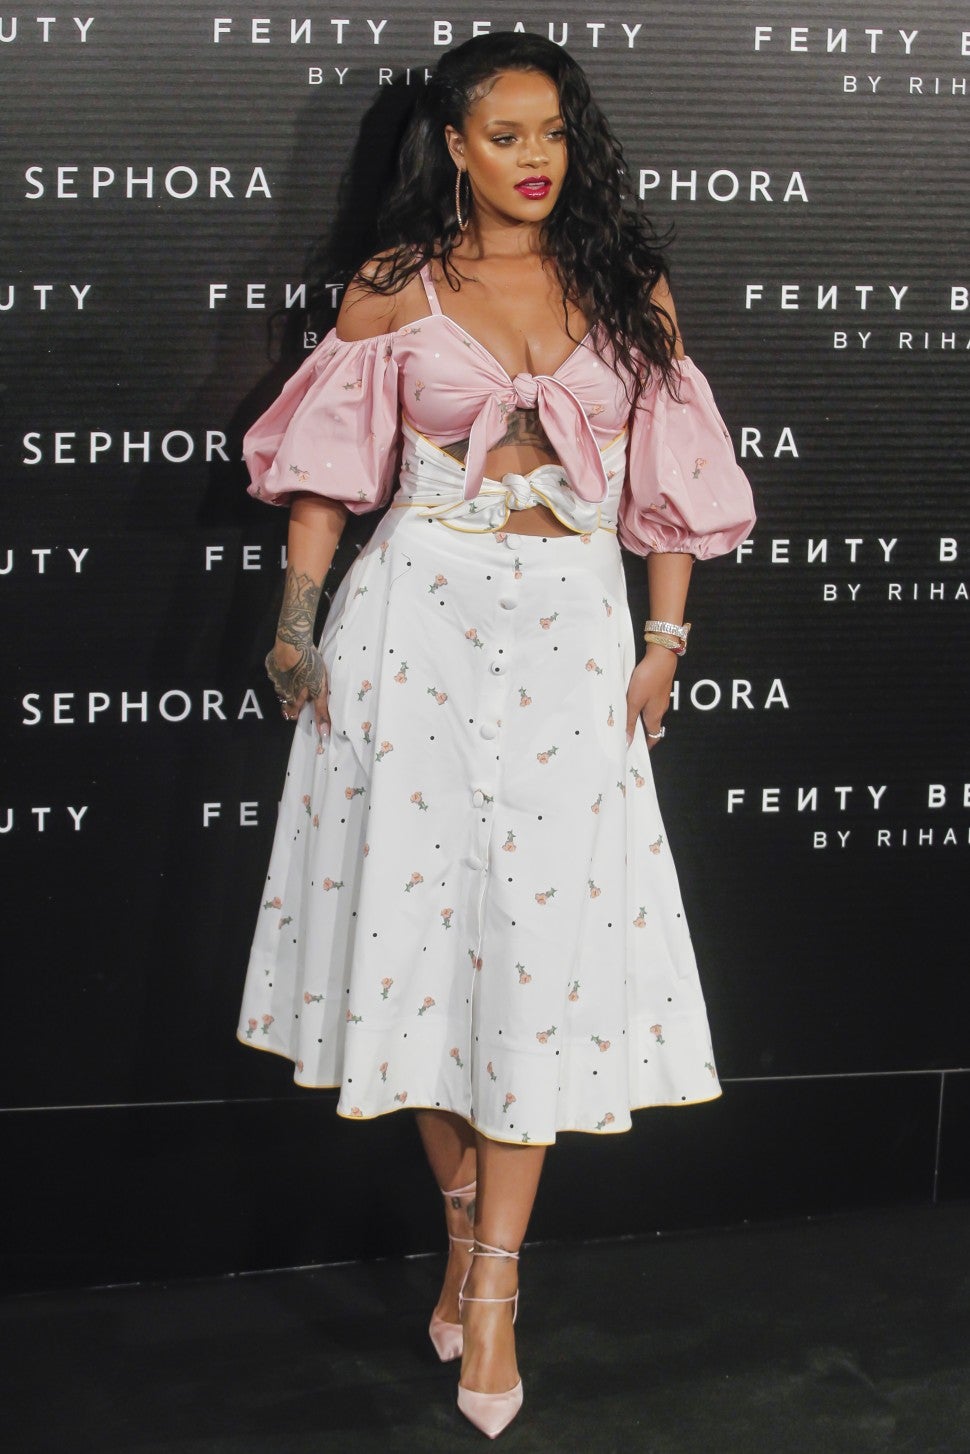 Rihanna at Fenty event in floral dress splash